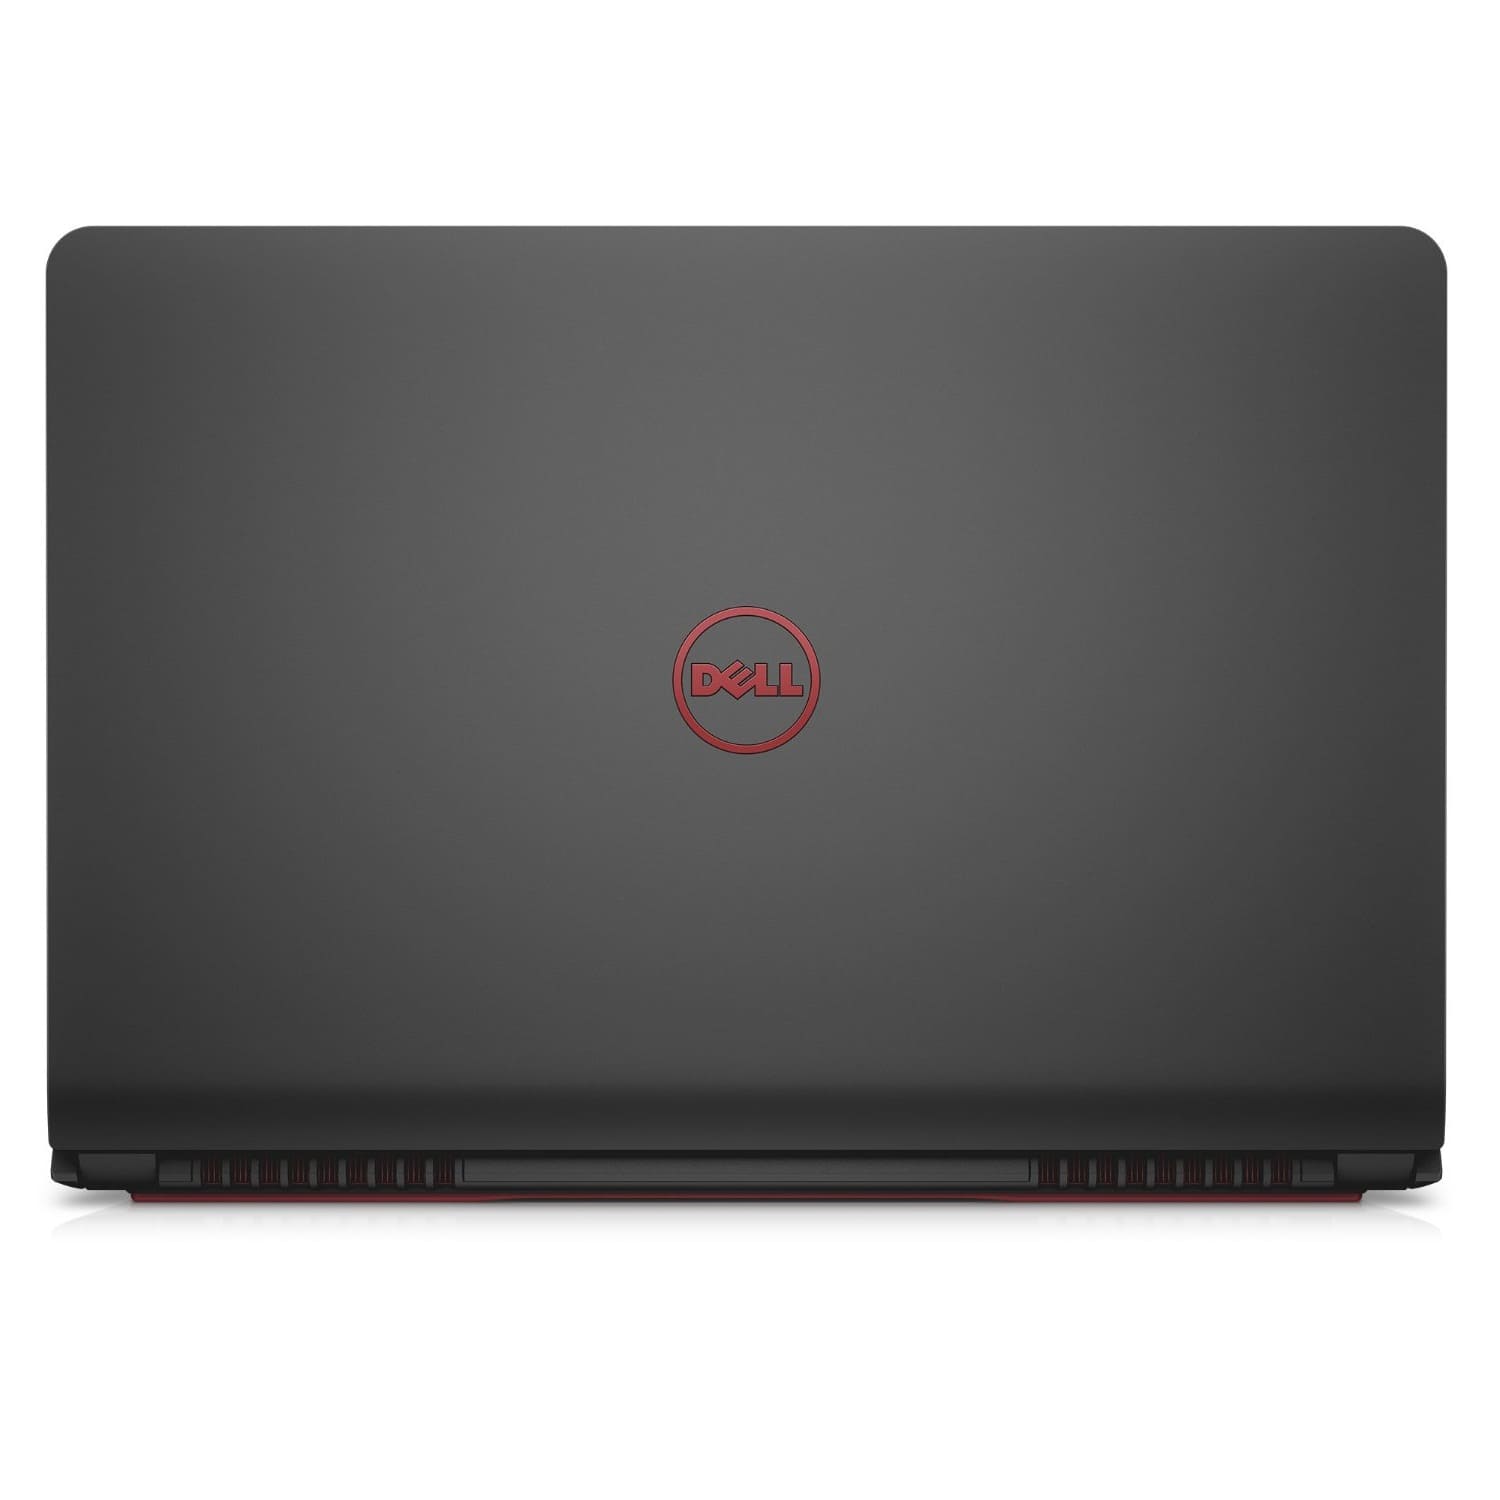 Laptop Dell Inspiron 7559A: Cỗ máy mạnh mẽ chơi game cực đỉnh